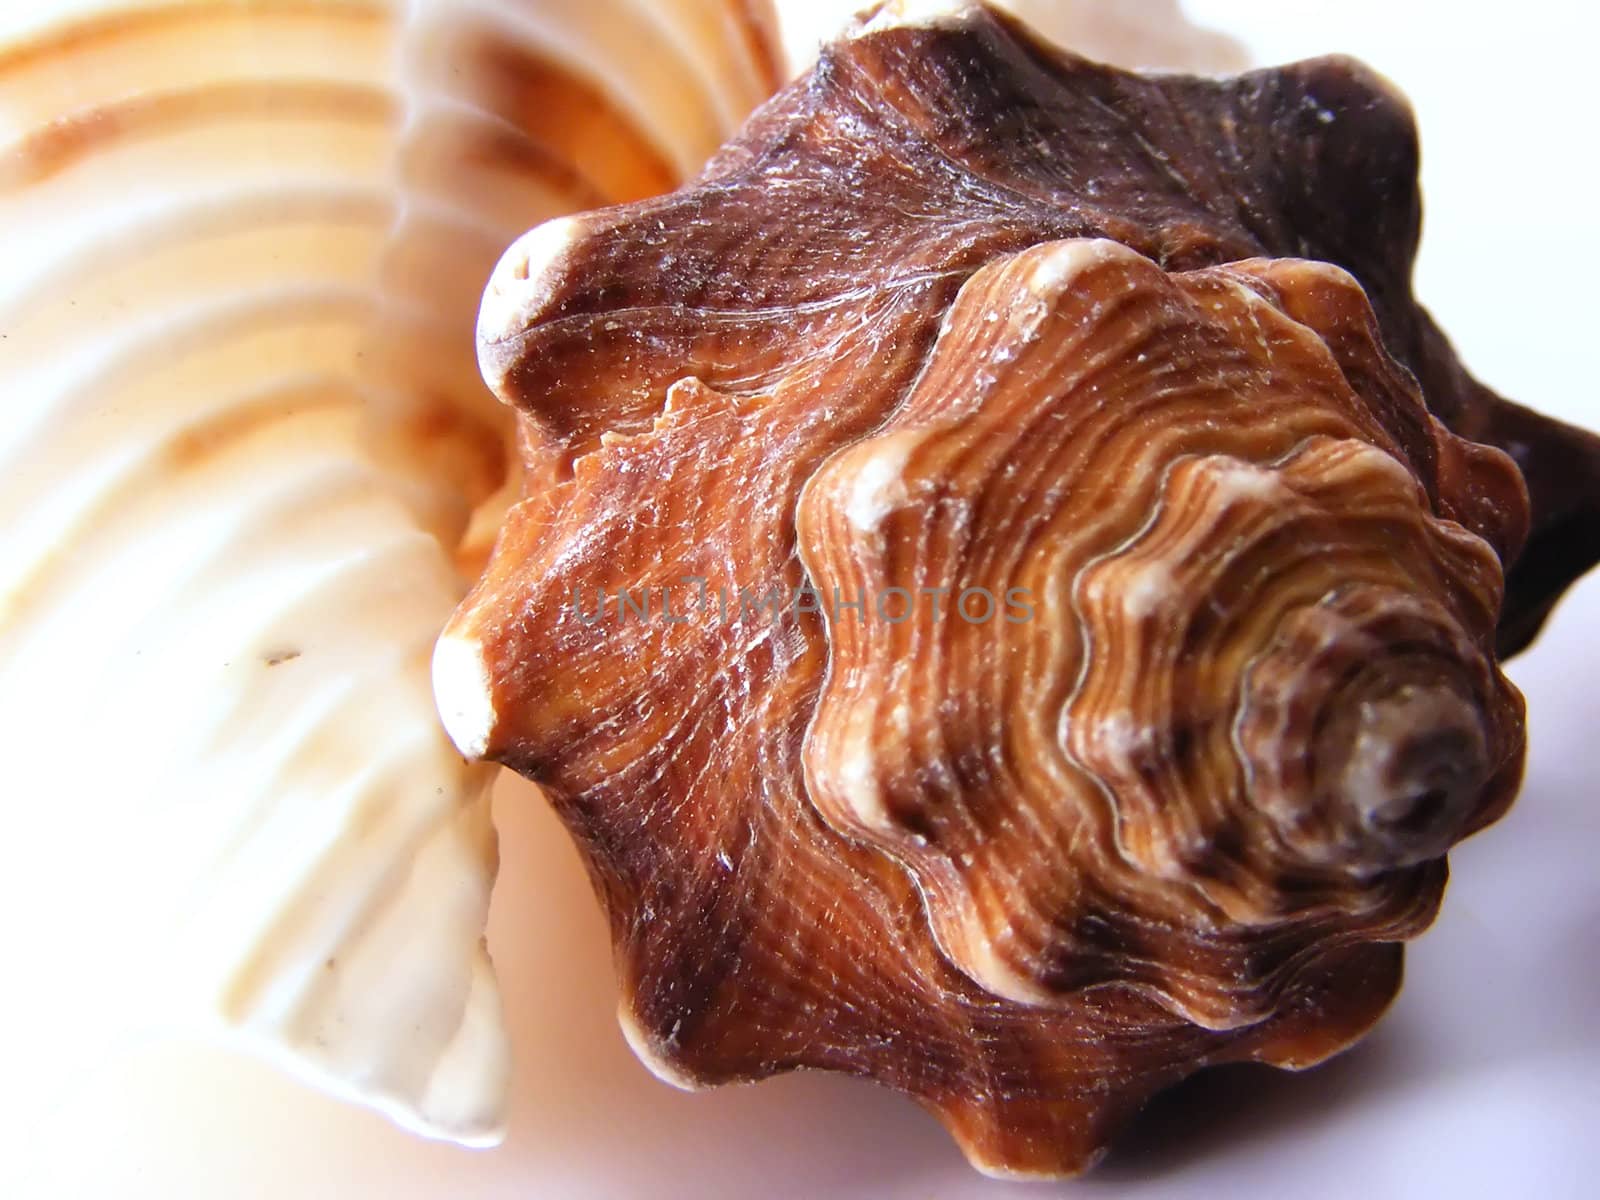 Creamy Brown Seashell by watamyr